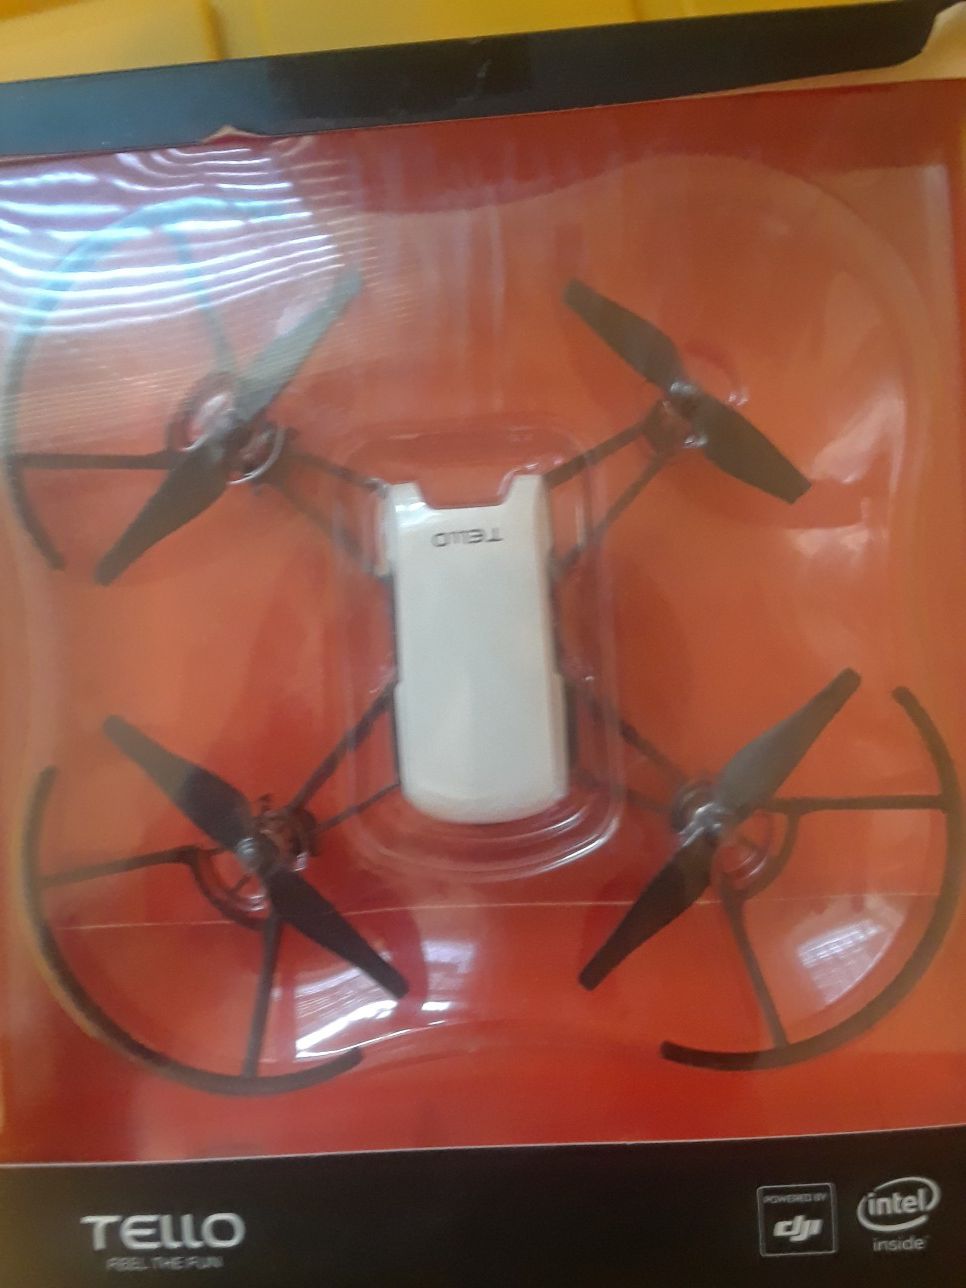 Tello drone